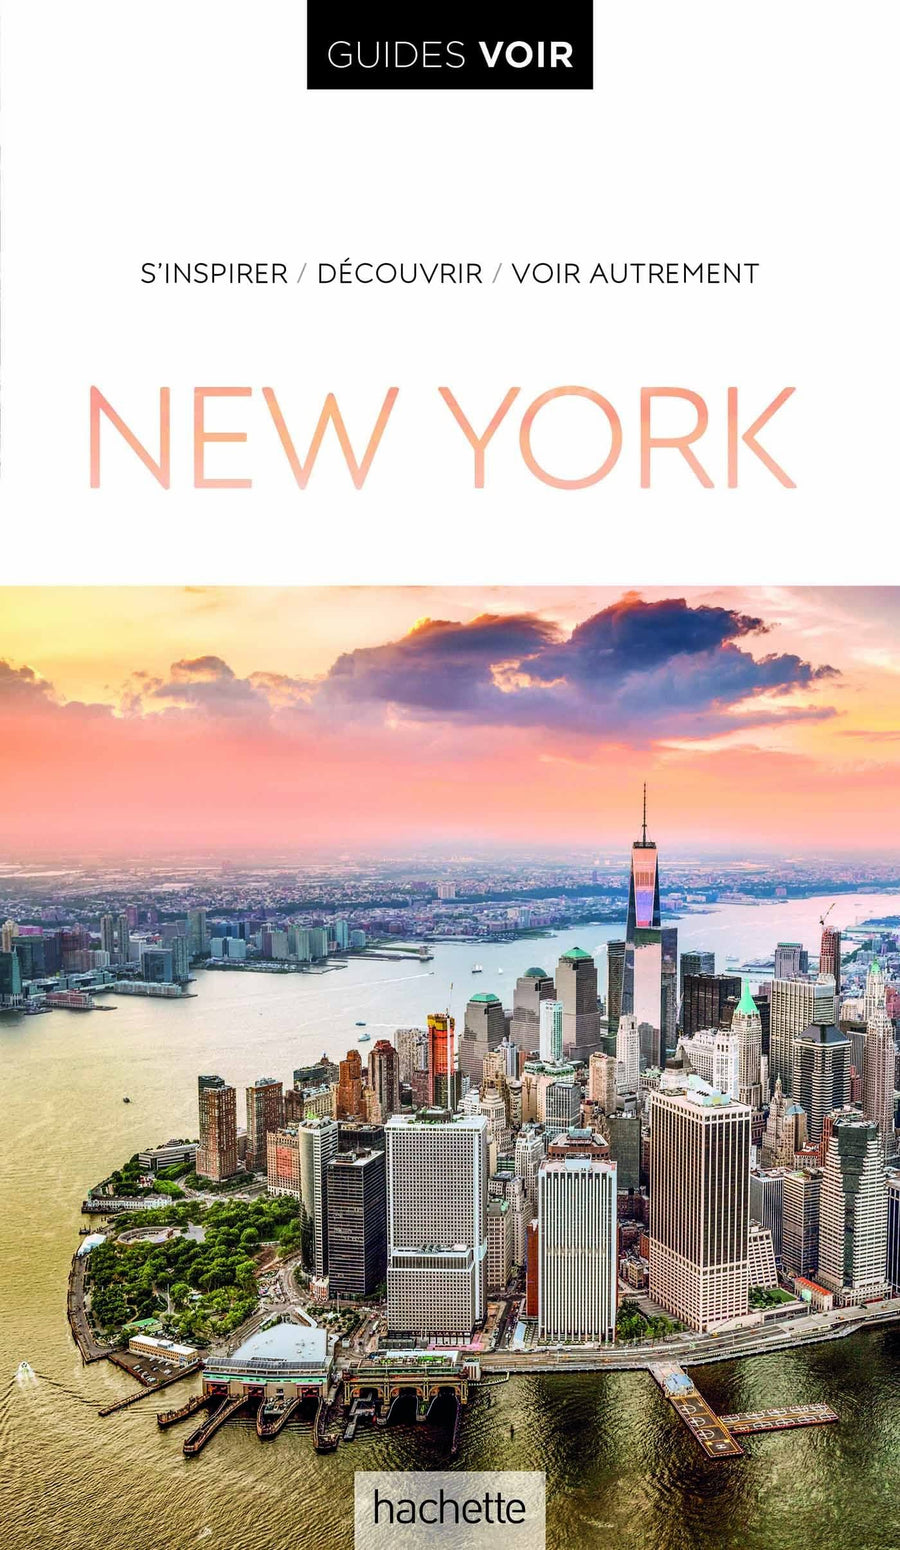 Guide de voyage - New York | Guides Voir guide de voyage Guides Voir 